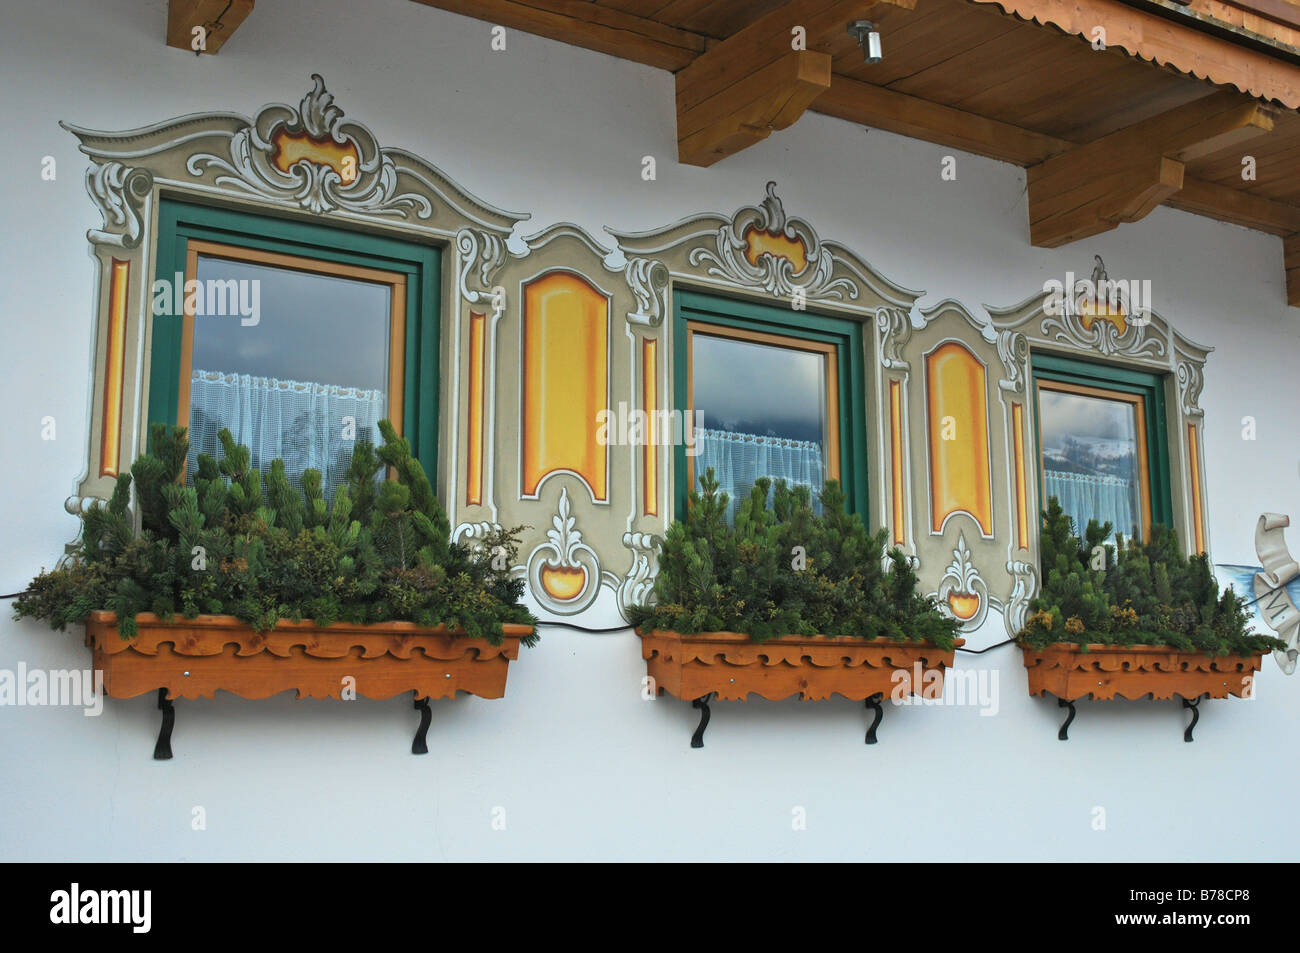 Gemalte Dekorationen rund um Fenster des österreichischen Hauses Zillertal Tirol Österreich Stockfoto